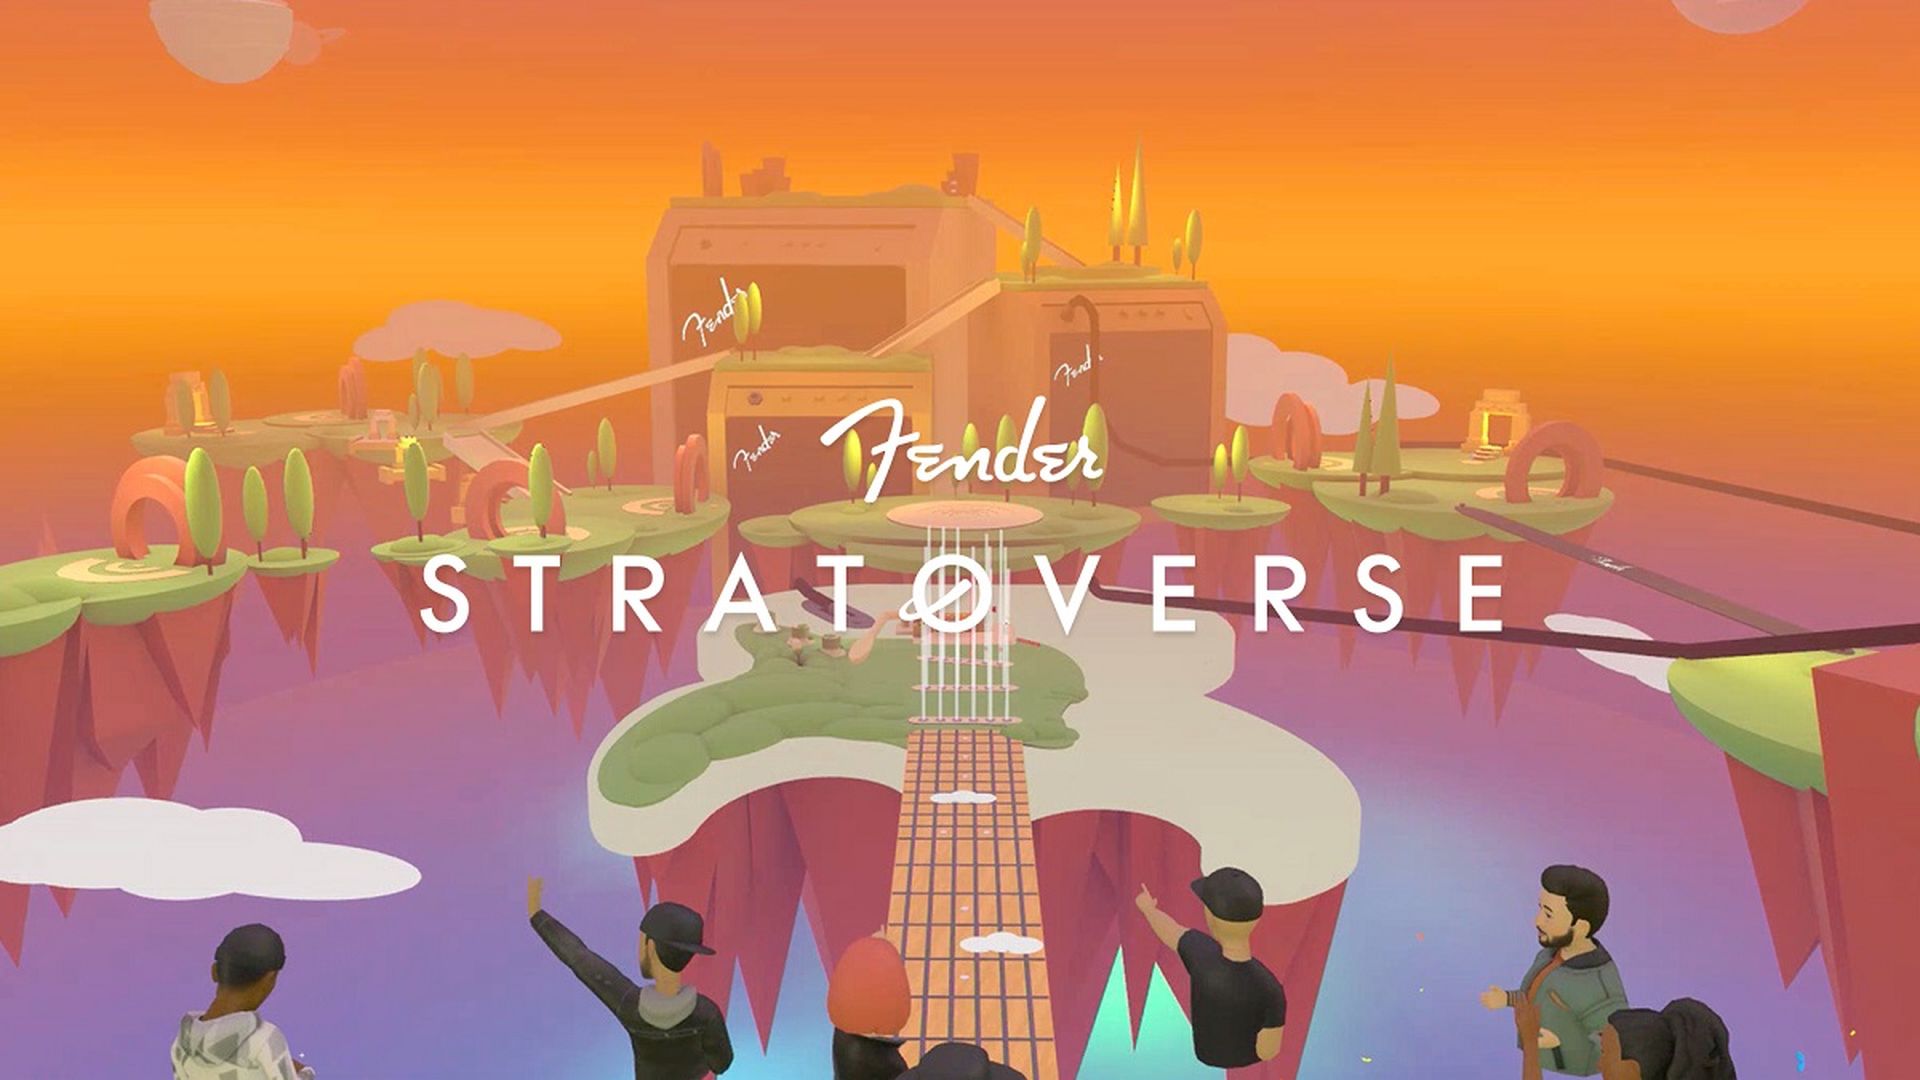 In dit artikel gaan we het hebben over de Fender Stratoverse, een nieuwe "miniversum" dat maakt deel uit van Meta's Horizon Worlds metaverse-project.